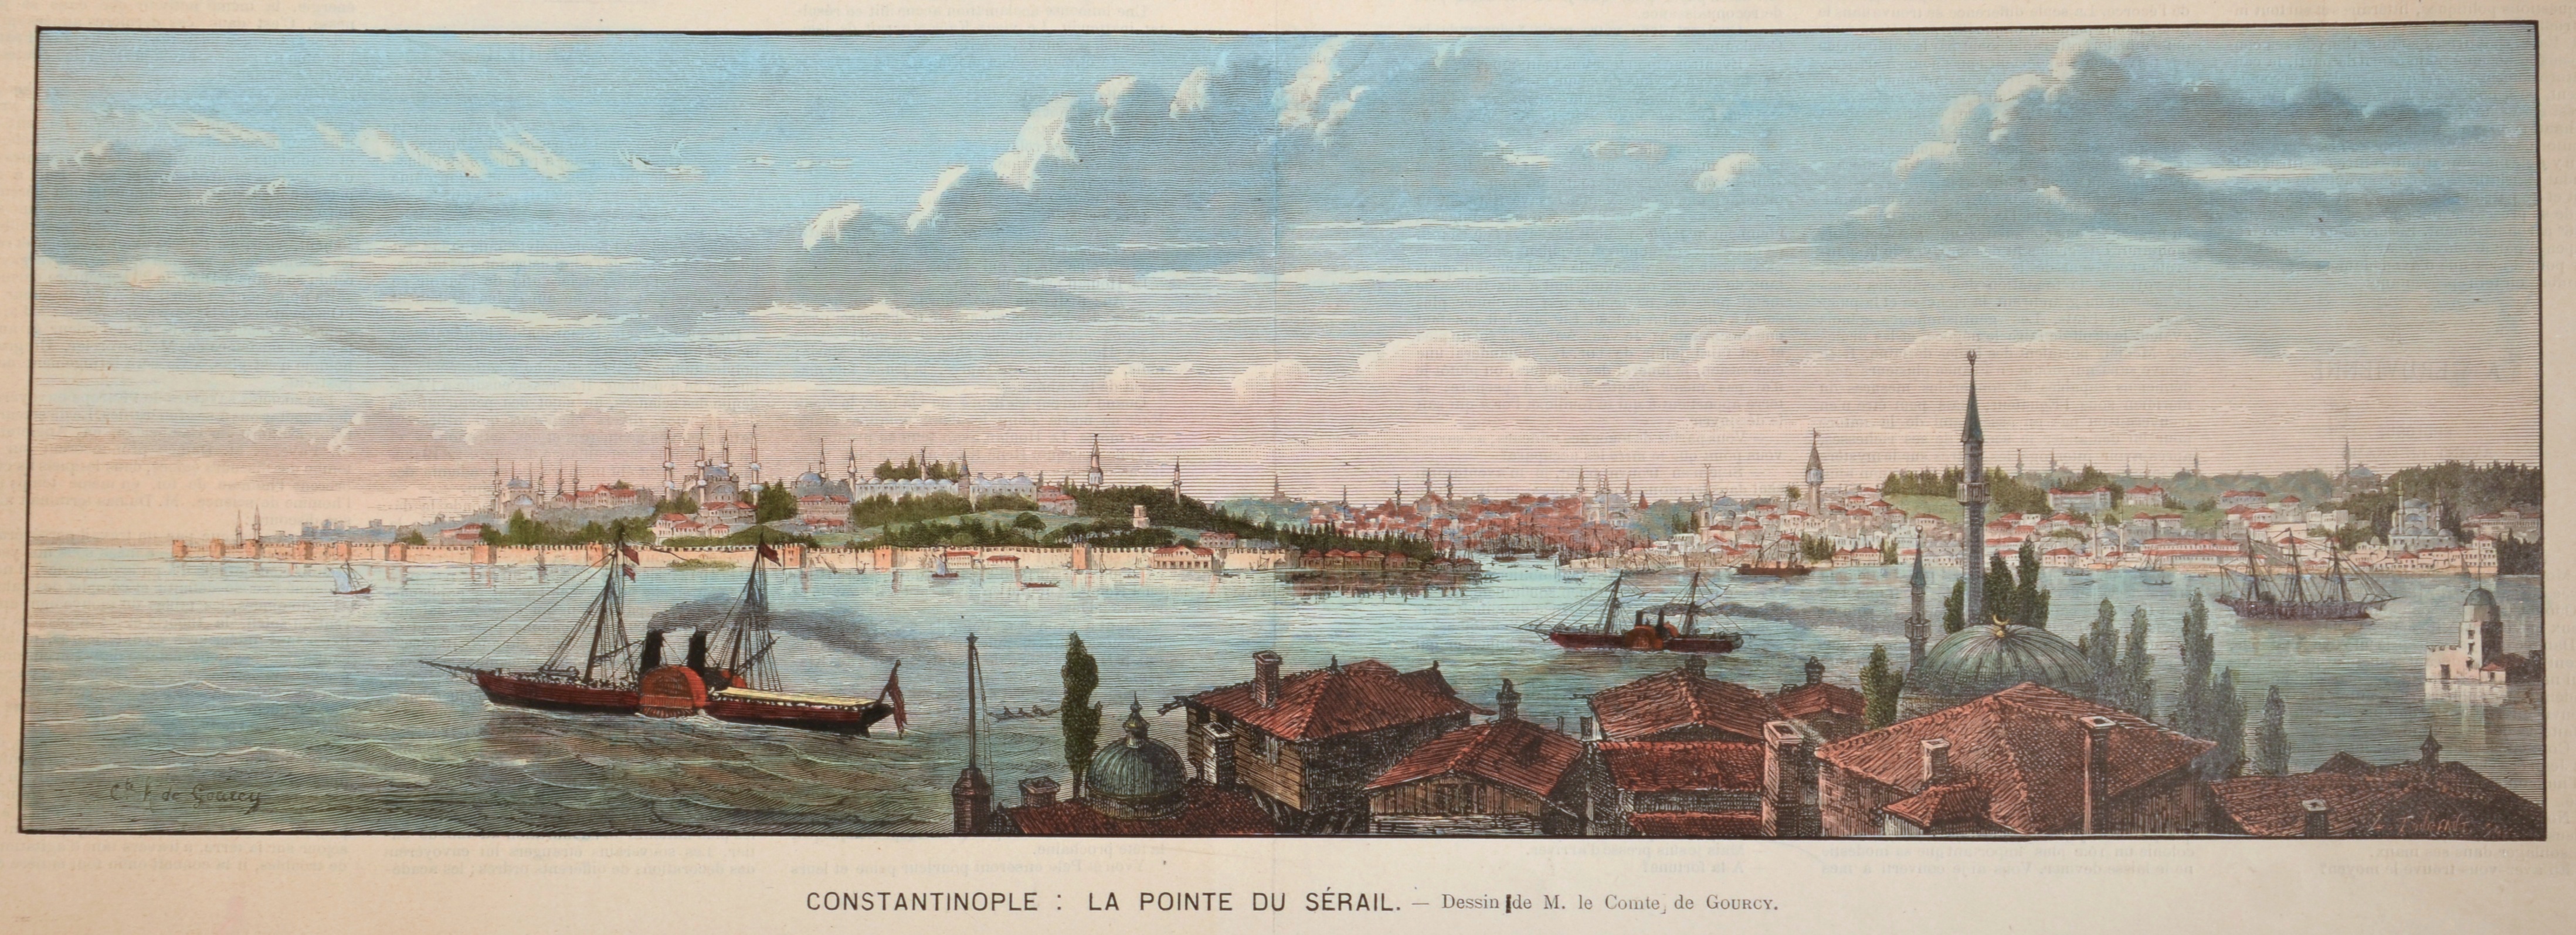 Tourfaut L. Constantinople: la Ponte du Sérail.